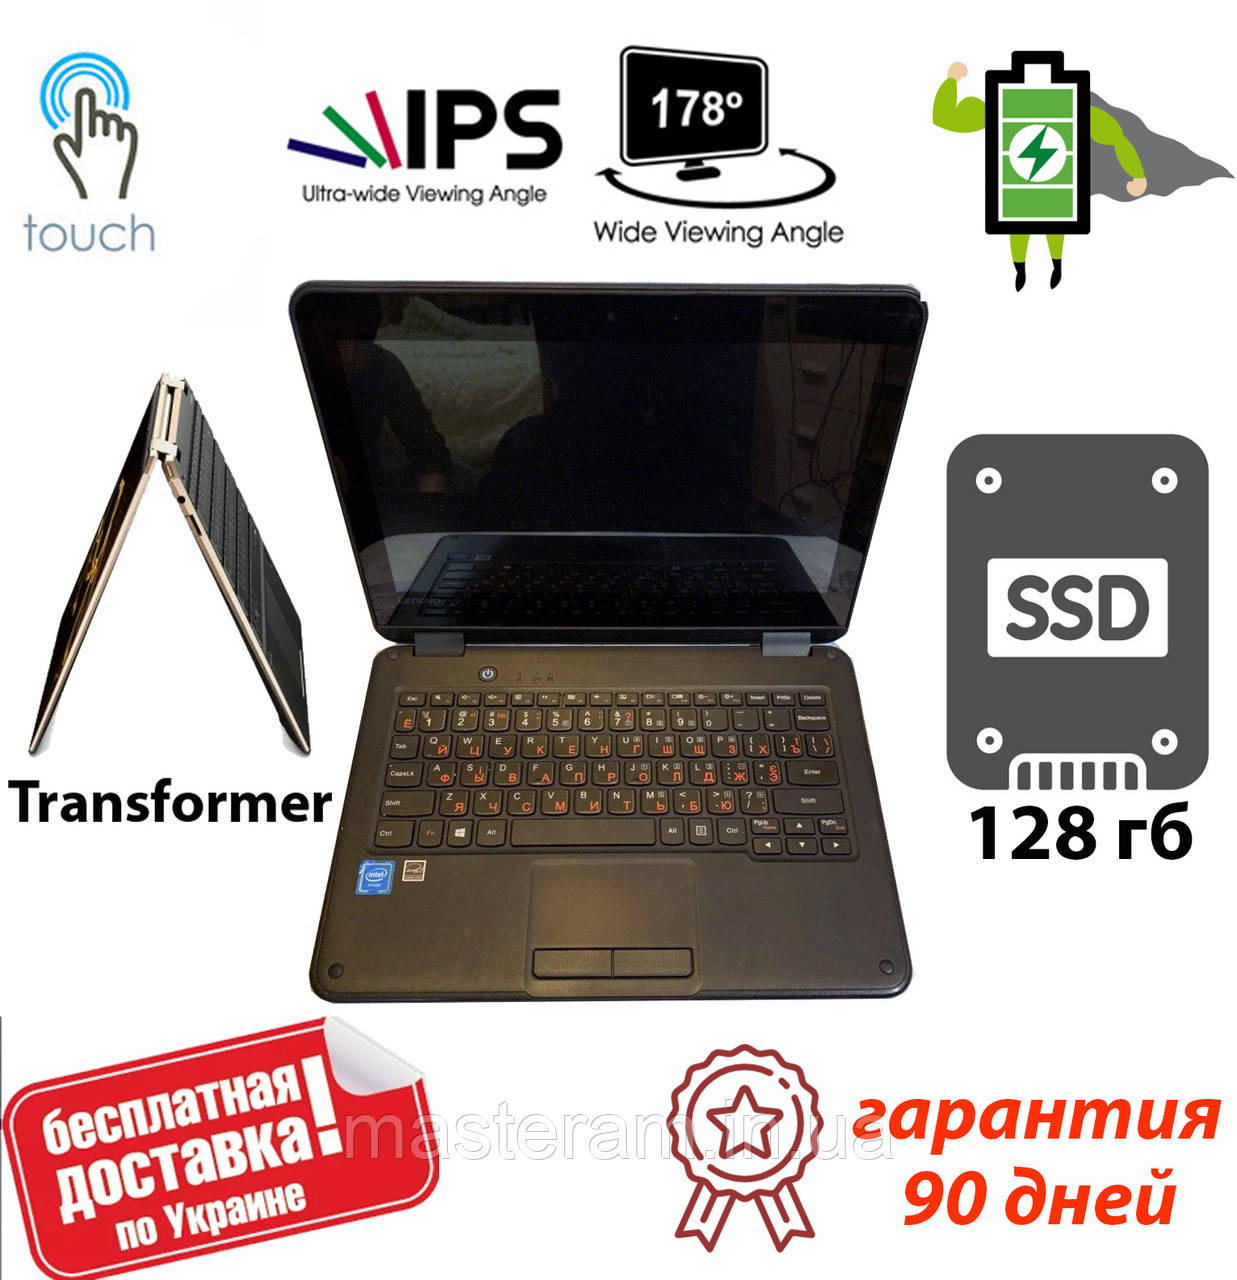 Купить Ноутбук Трансформер В Украине